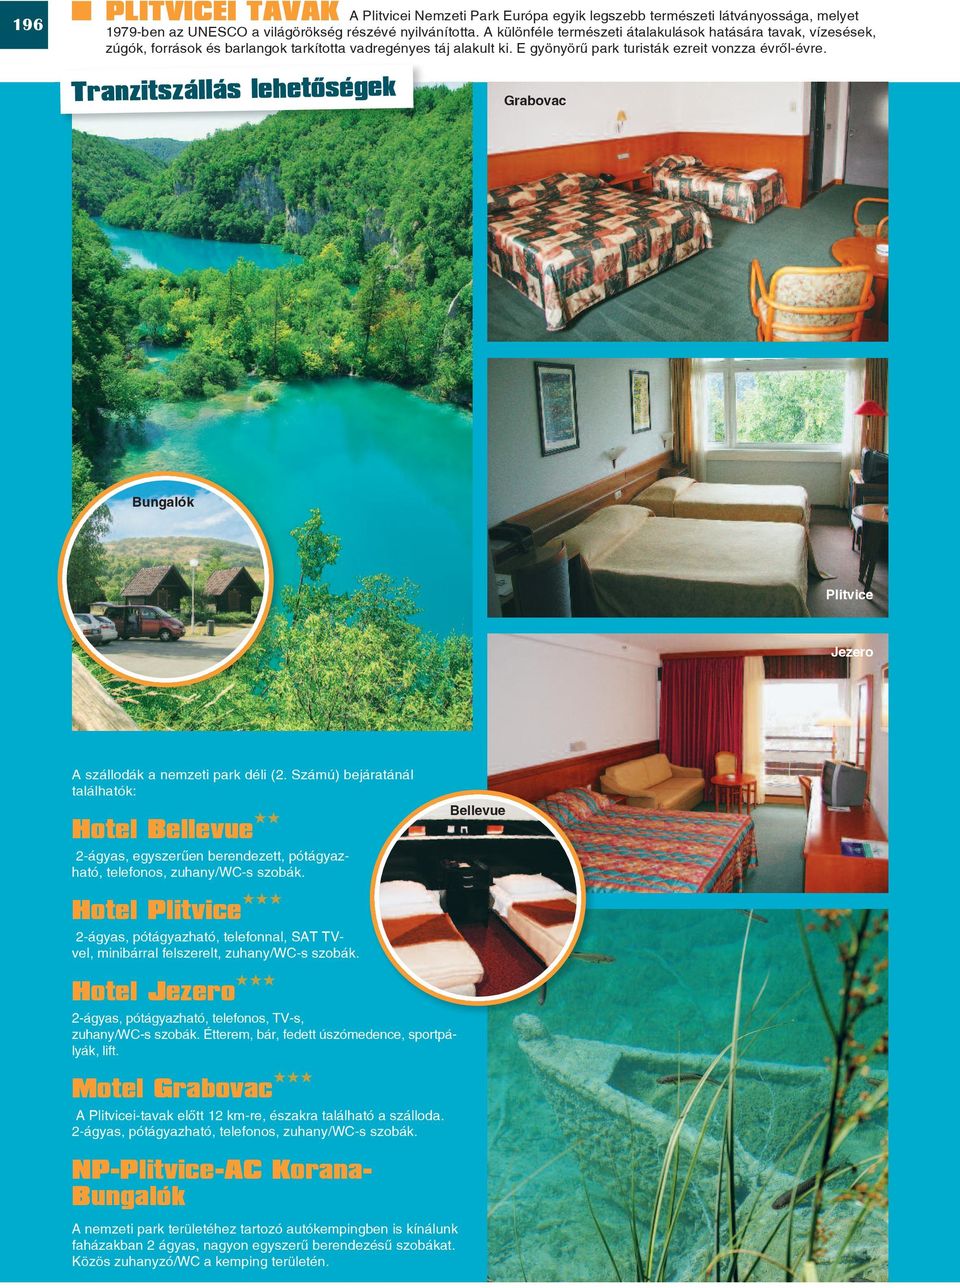 Tranzitszállás lehetôségek Grabovac Bungalók Plitvice Jezero A szállodák a nemzeti park déli (2.